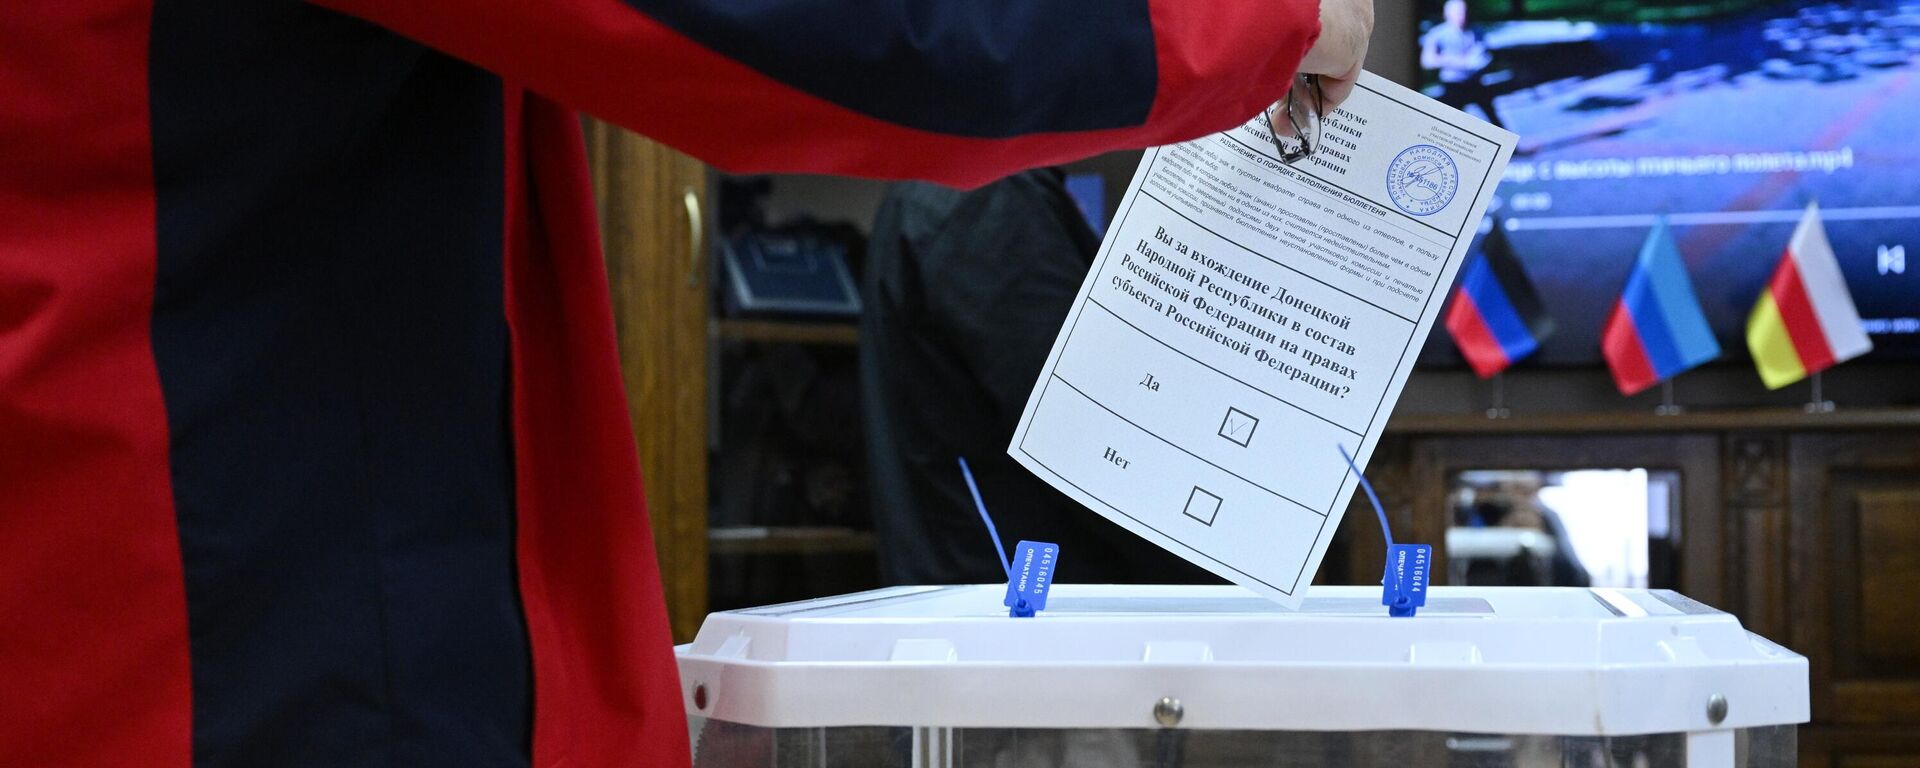 Một người đàn ông bỏ phiếu trong cuộc trưng cầu dân ý về việc gia nhập Cộng hòa Nhân dân Donetsk và Cộng hòa Nhân dân Lugansk vào Nga tại một điểm bỏ phiếu ở Đại sứ quán DNR ở Moskva - Sputnik Việt Nam, 1920, 26.09.2022